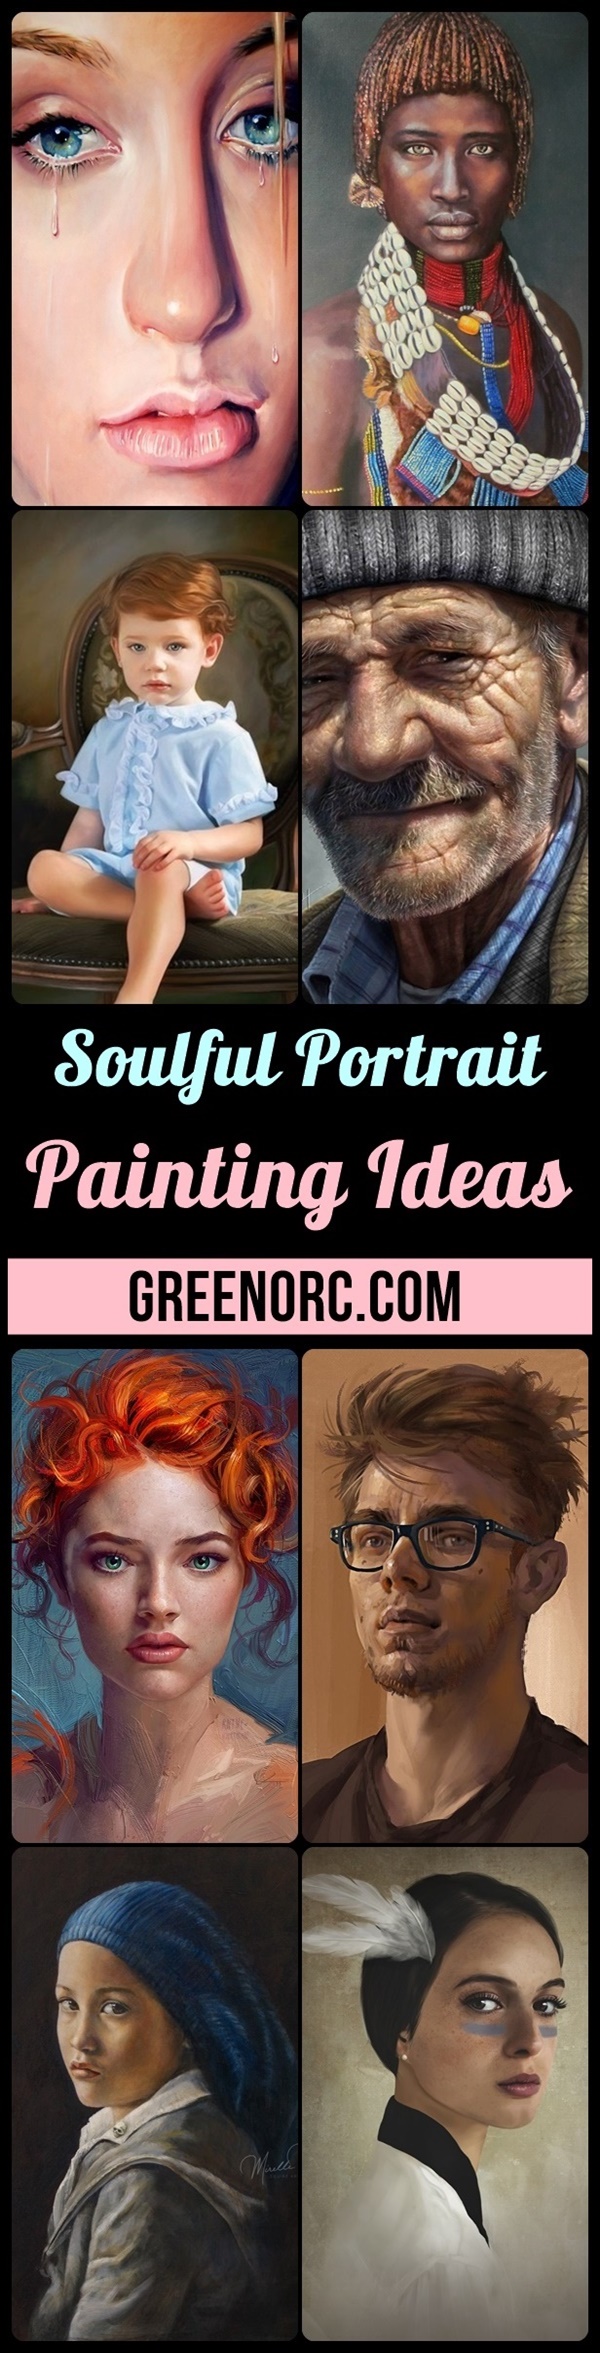 Soulful Portrait Painting Ideas